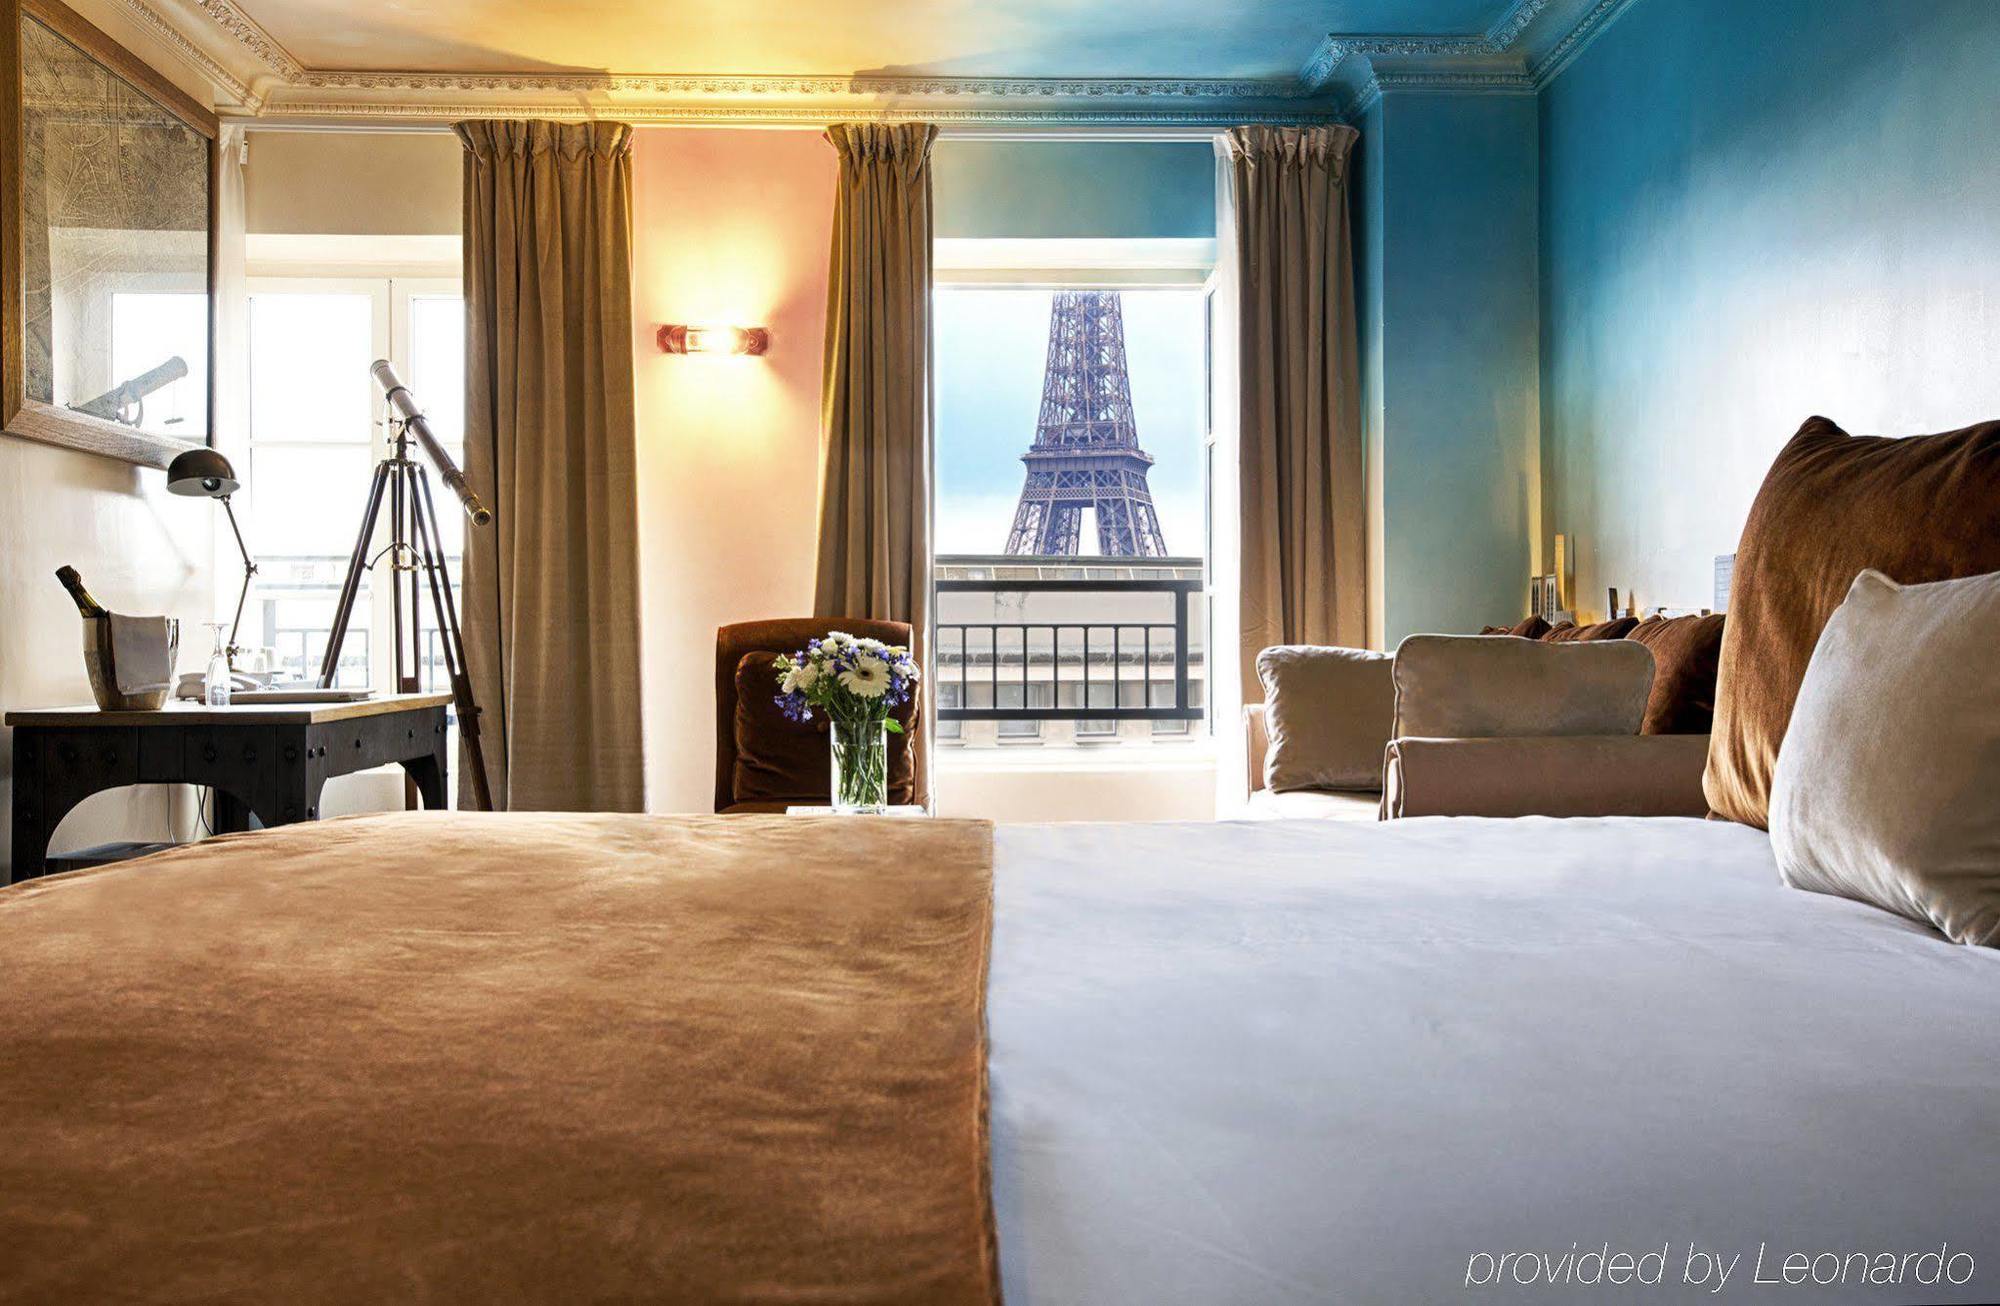 Eiffel Trocadero Hotel Париж Екстериор снимка